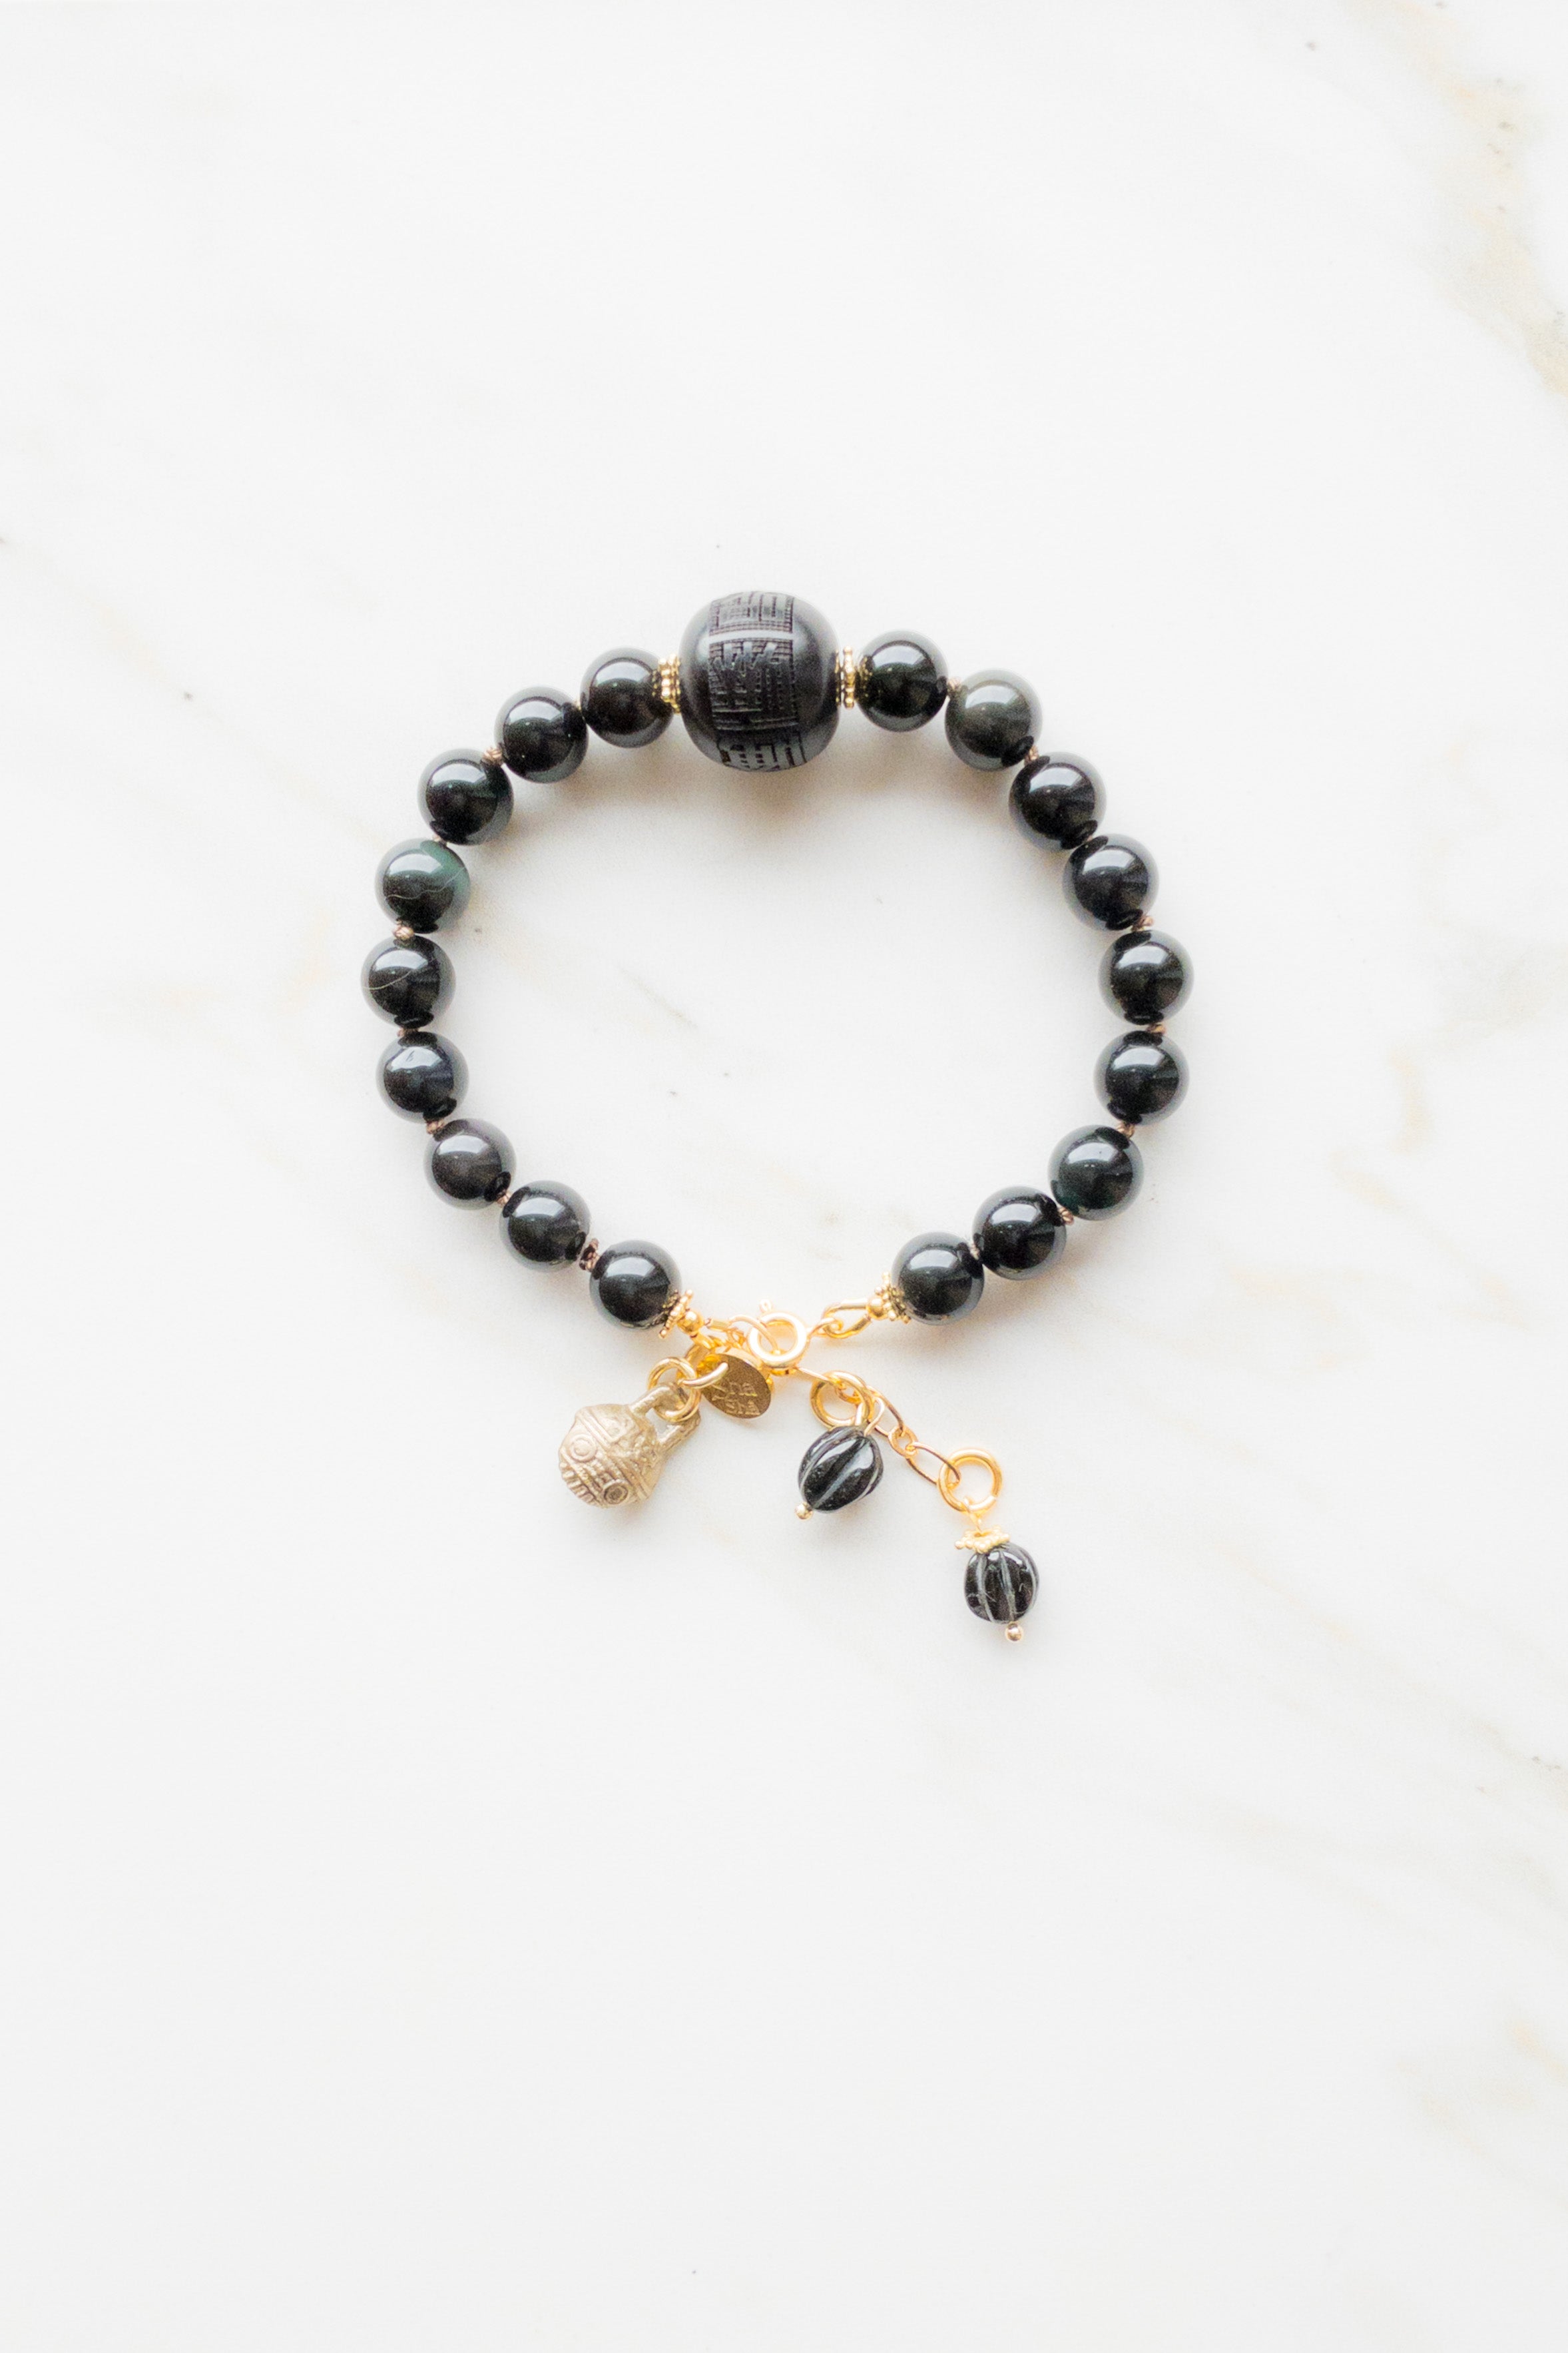 OM Mantra Bracelet “Melody Mantra” Collection - shashā jewellery 